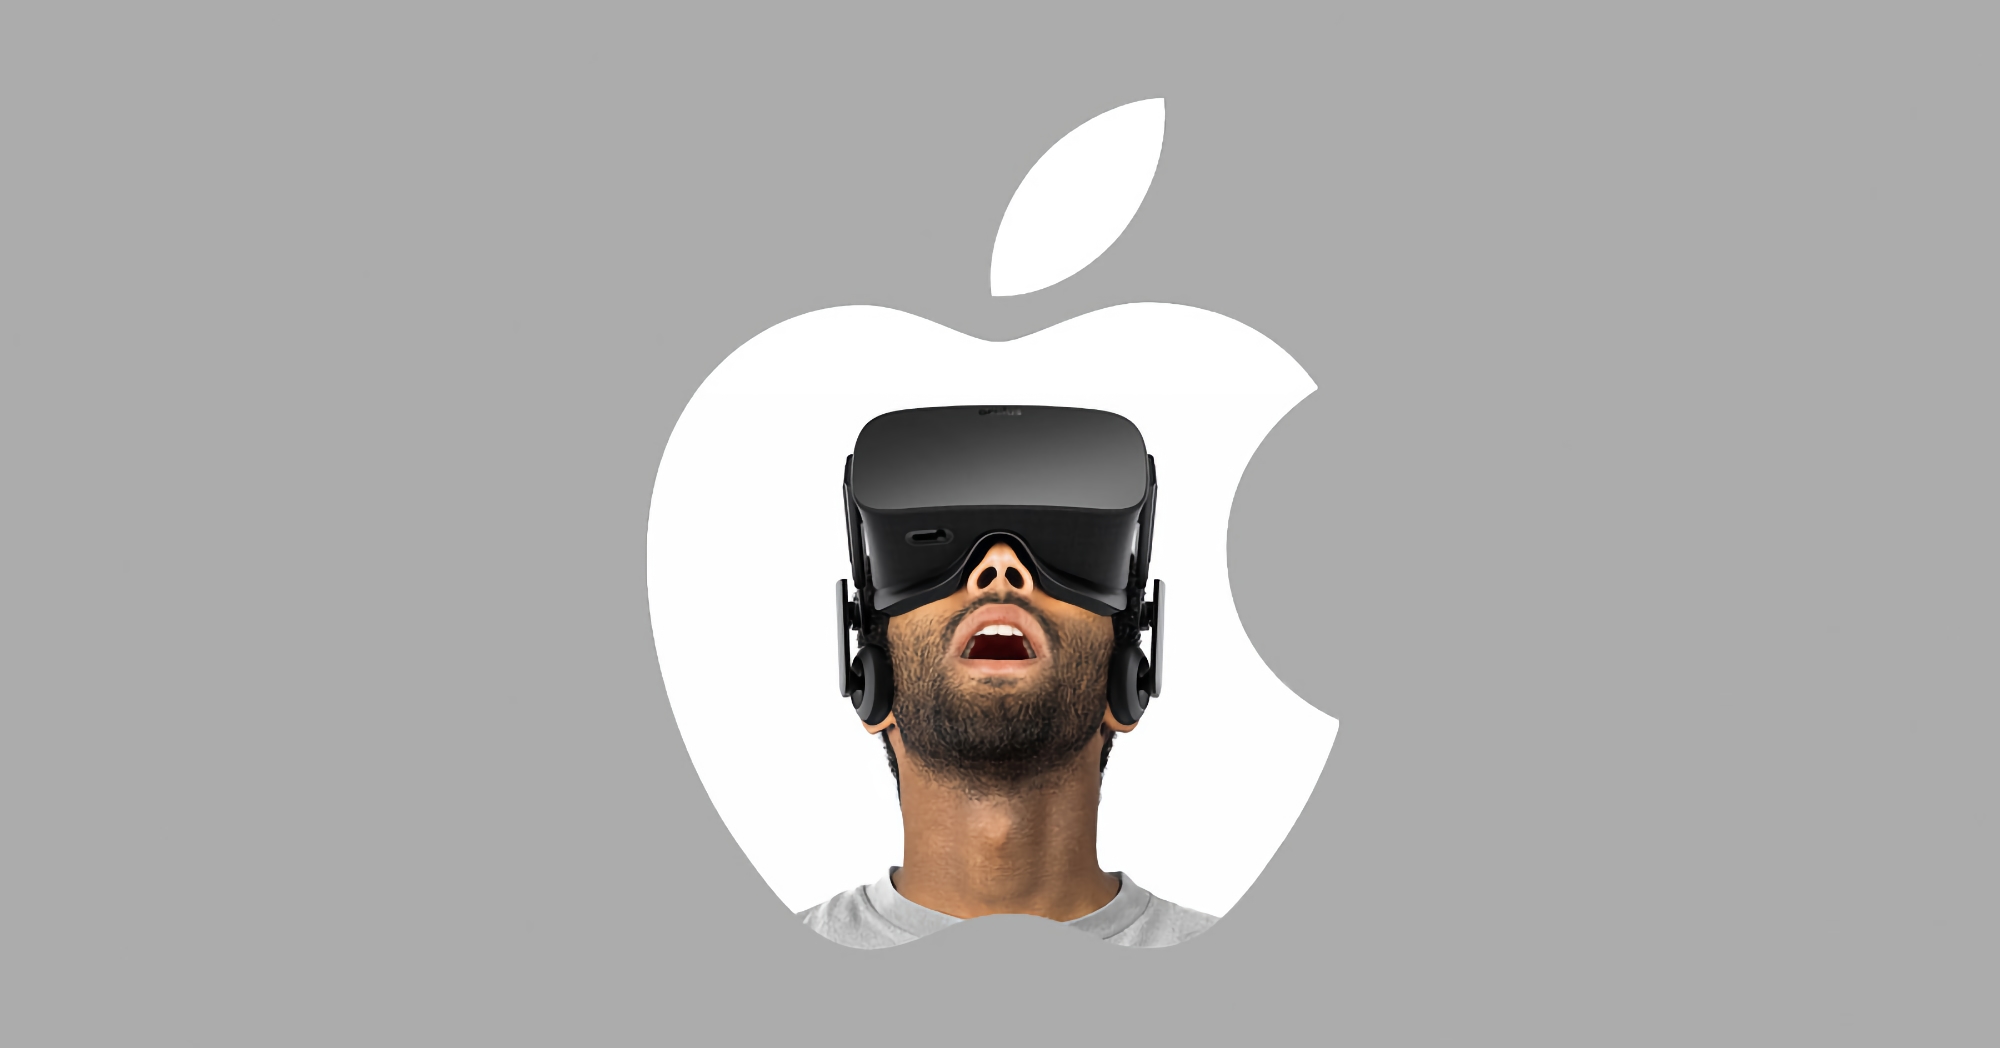 Mark Gurman: Apple wypuści hełm AR/VR z sową w przyszłym roku i będzie on drogi